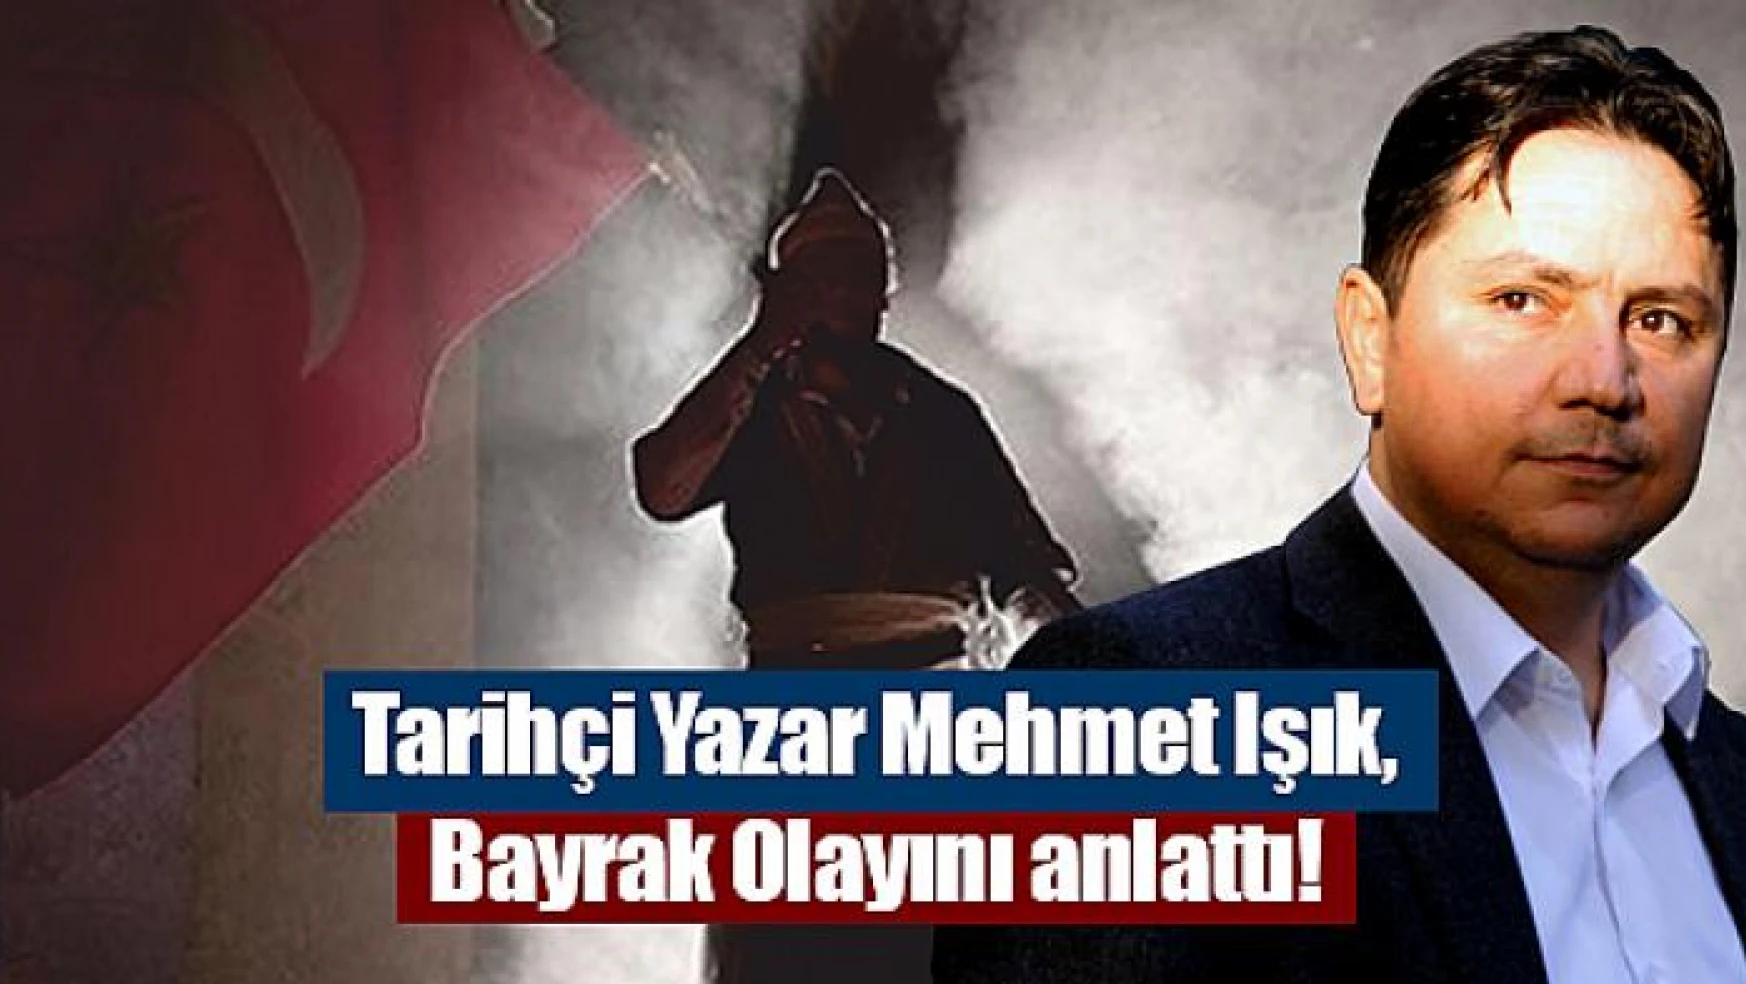 Tarihçi Yazar Mehmet Işık, Bayrak Olayını anlattı!